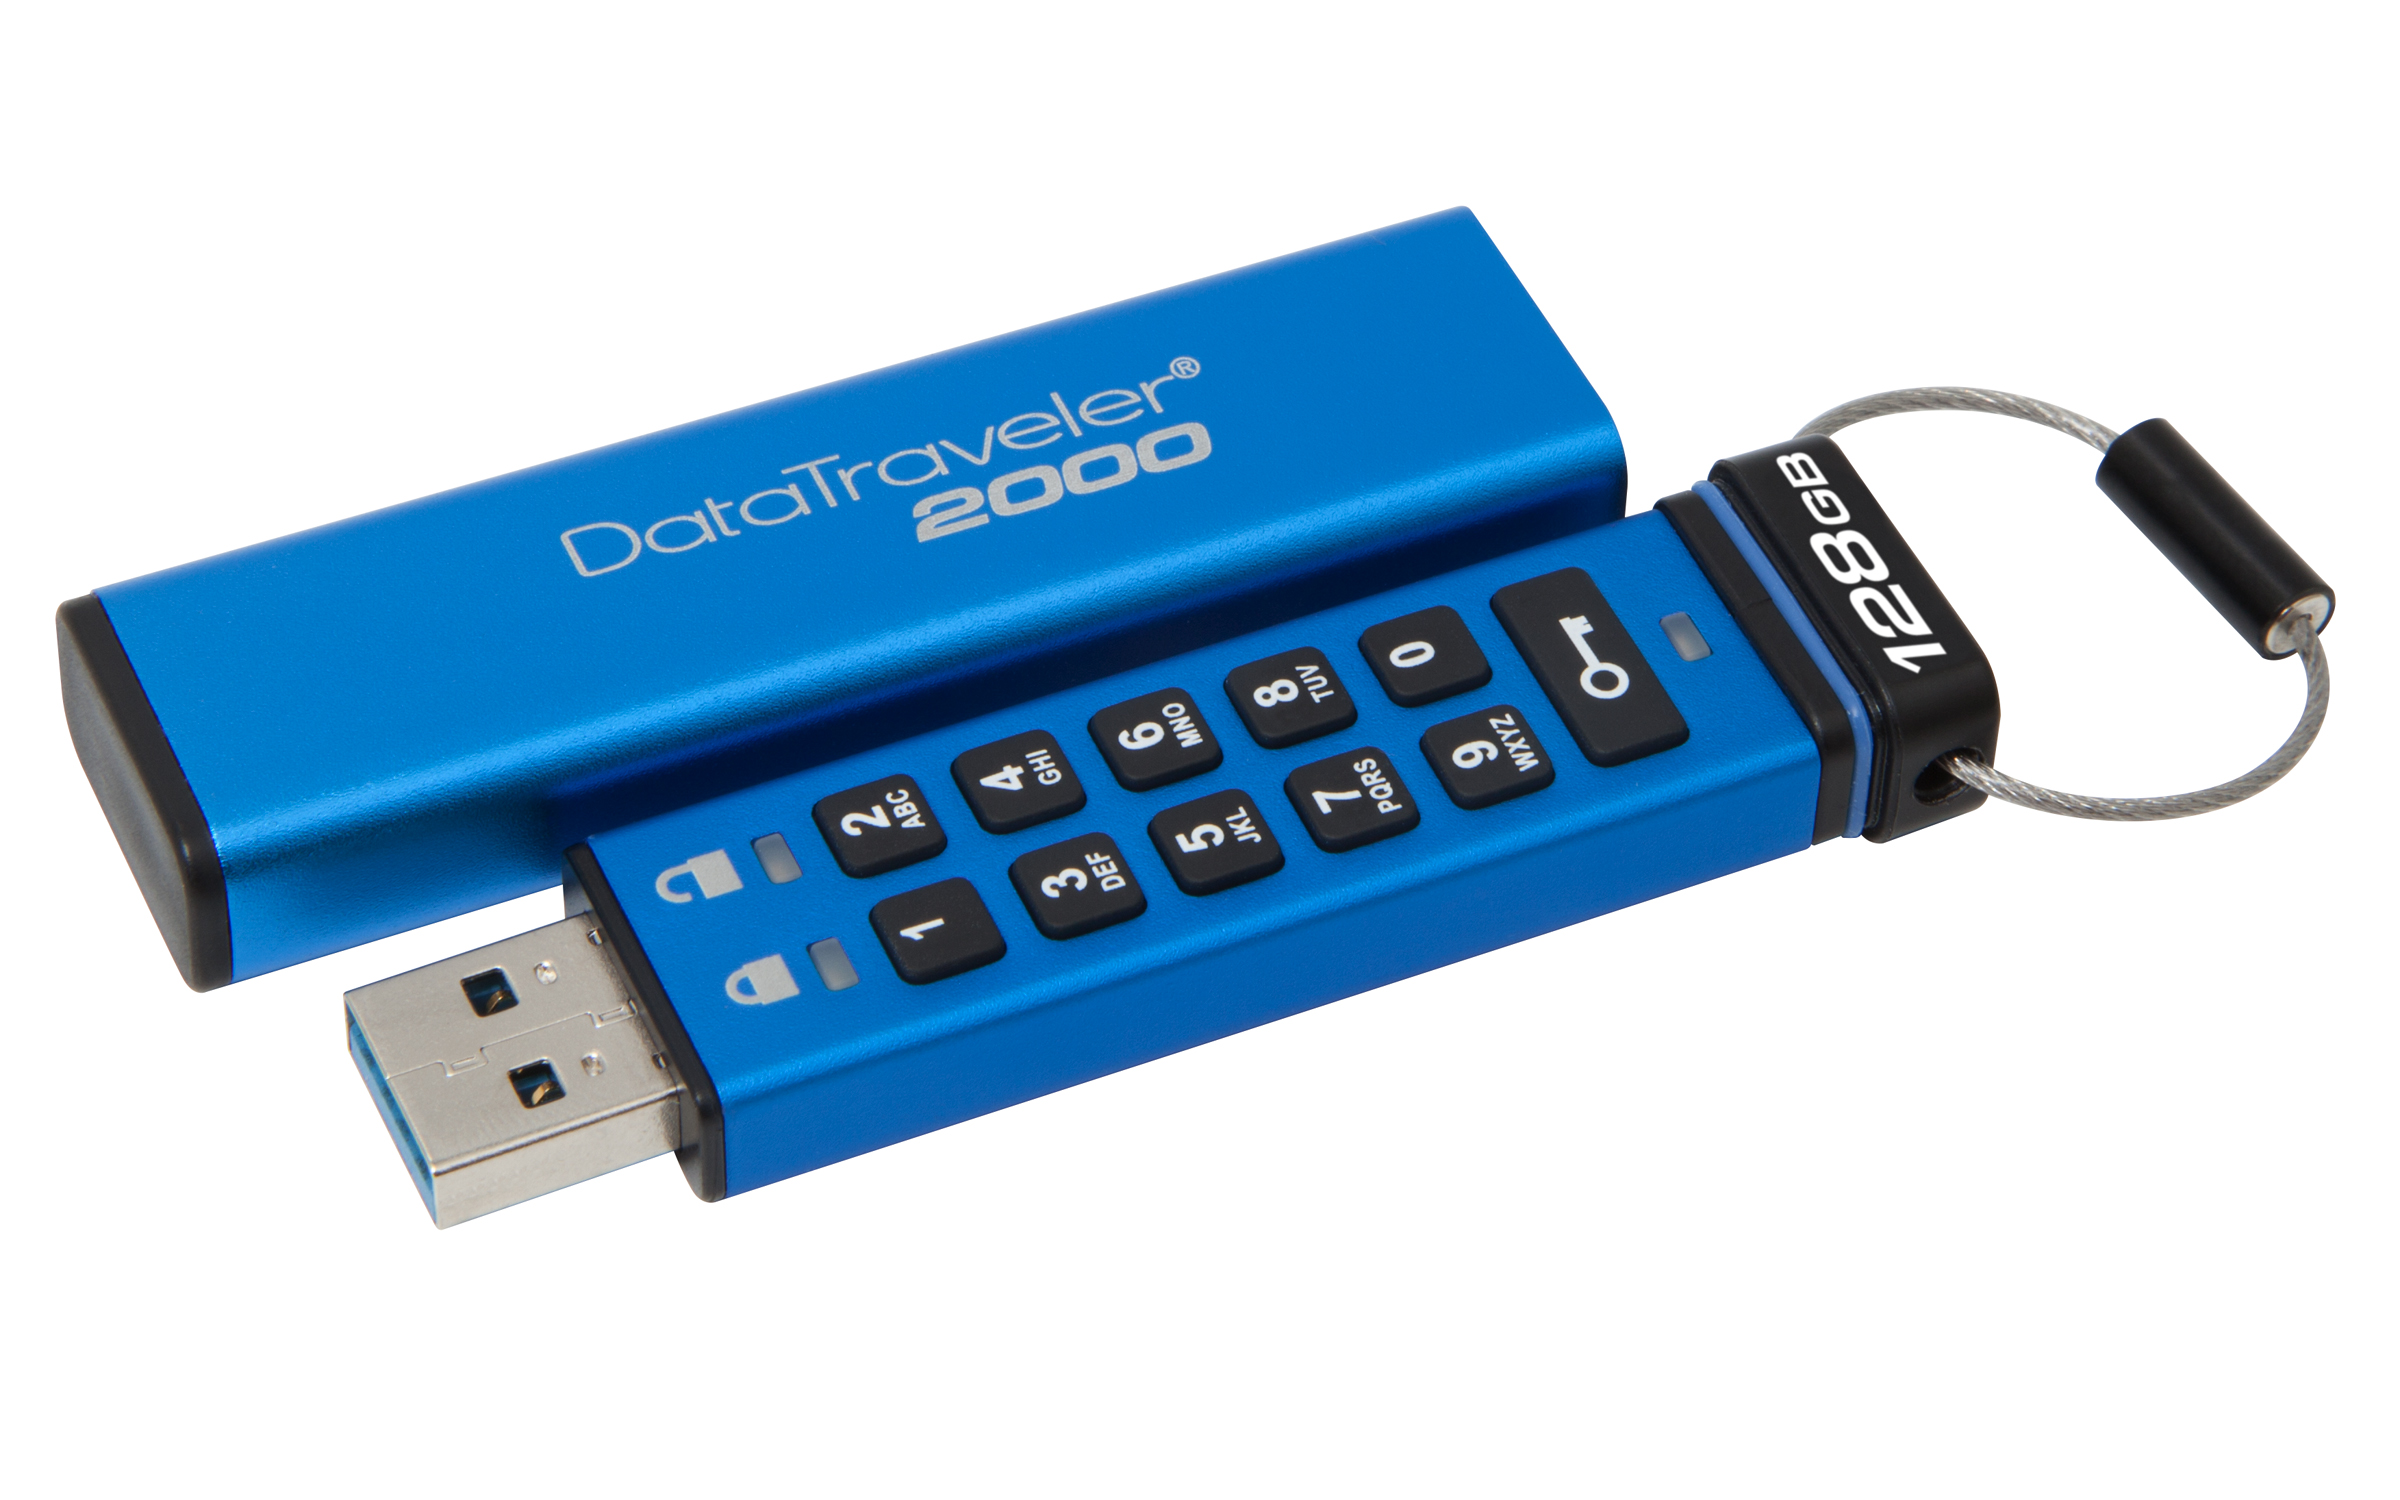 Kingston Digital wprowadza na rynek szyfrowane pamięci flash USB DataTraveler 2000 o pojemności 128 GB